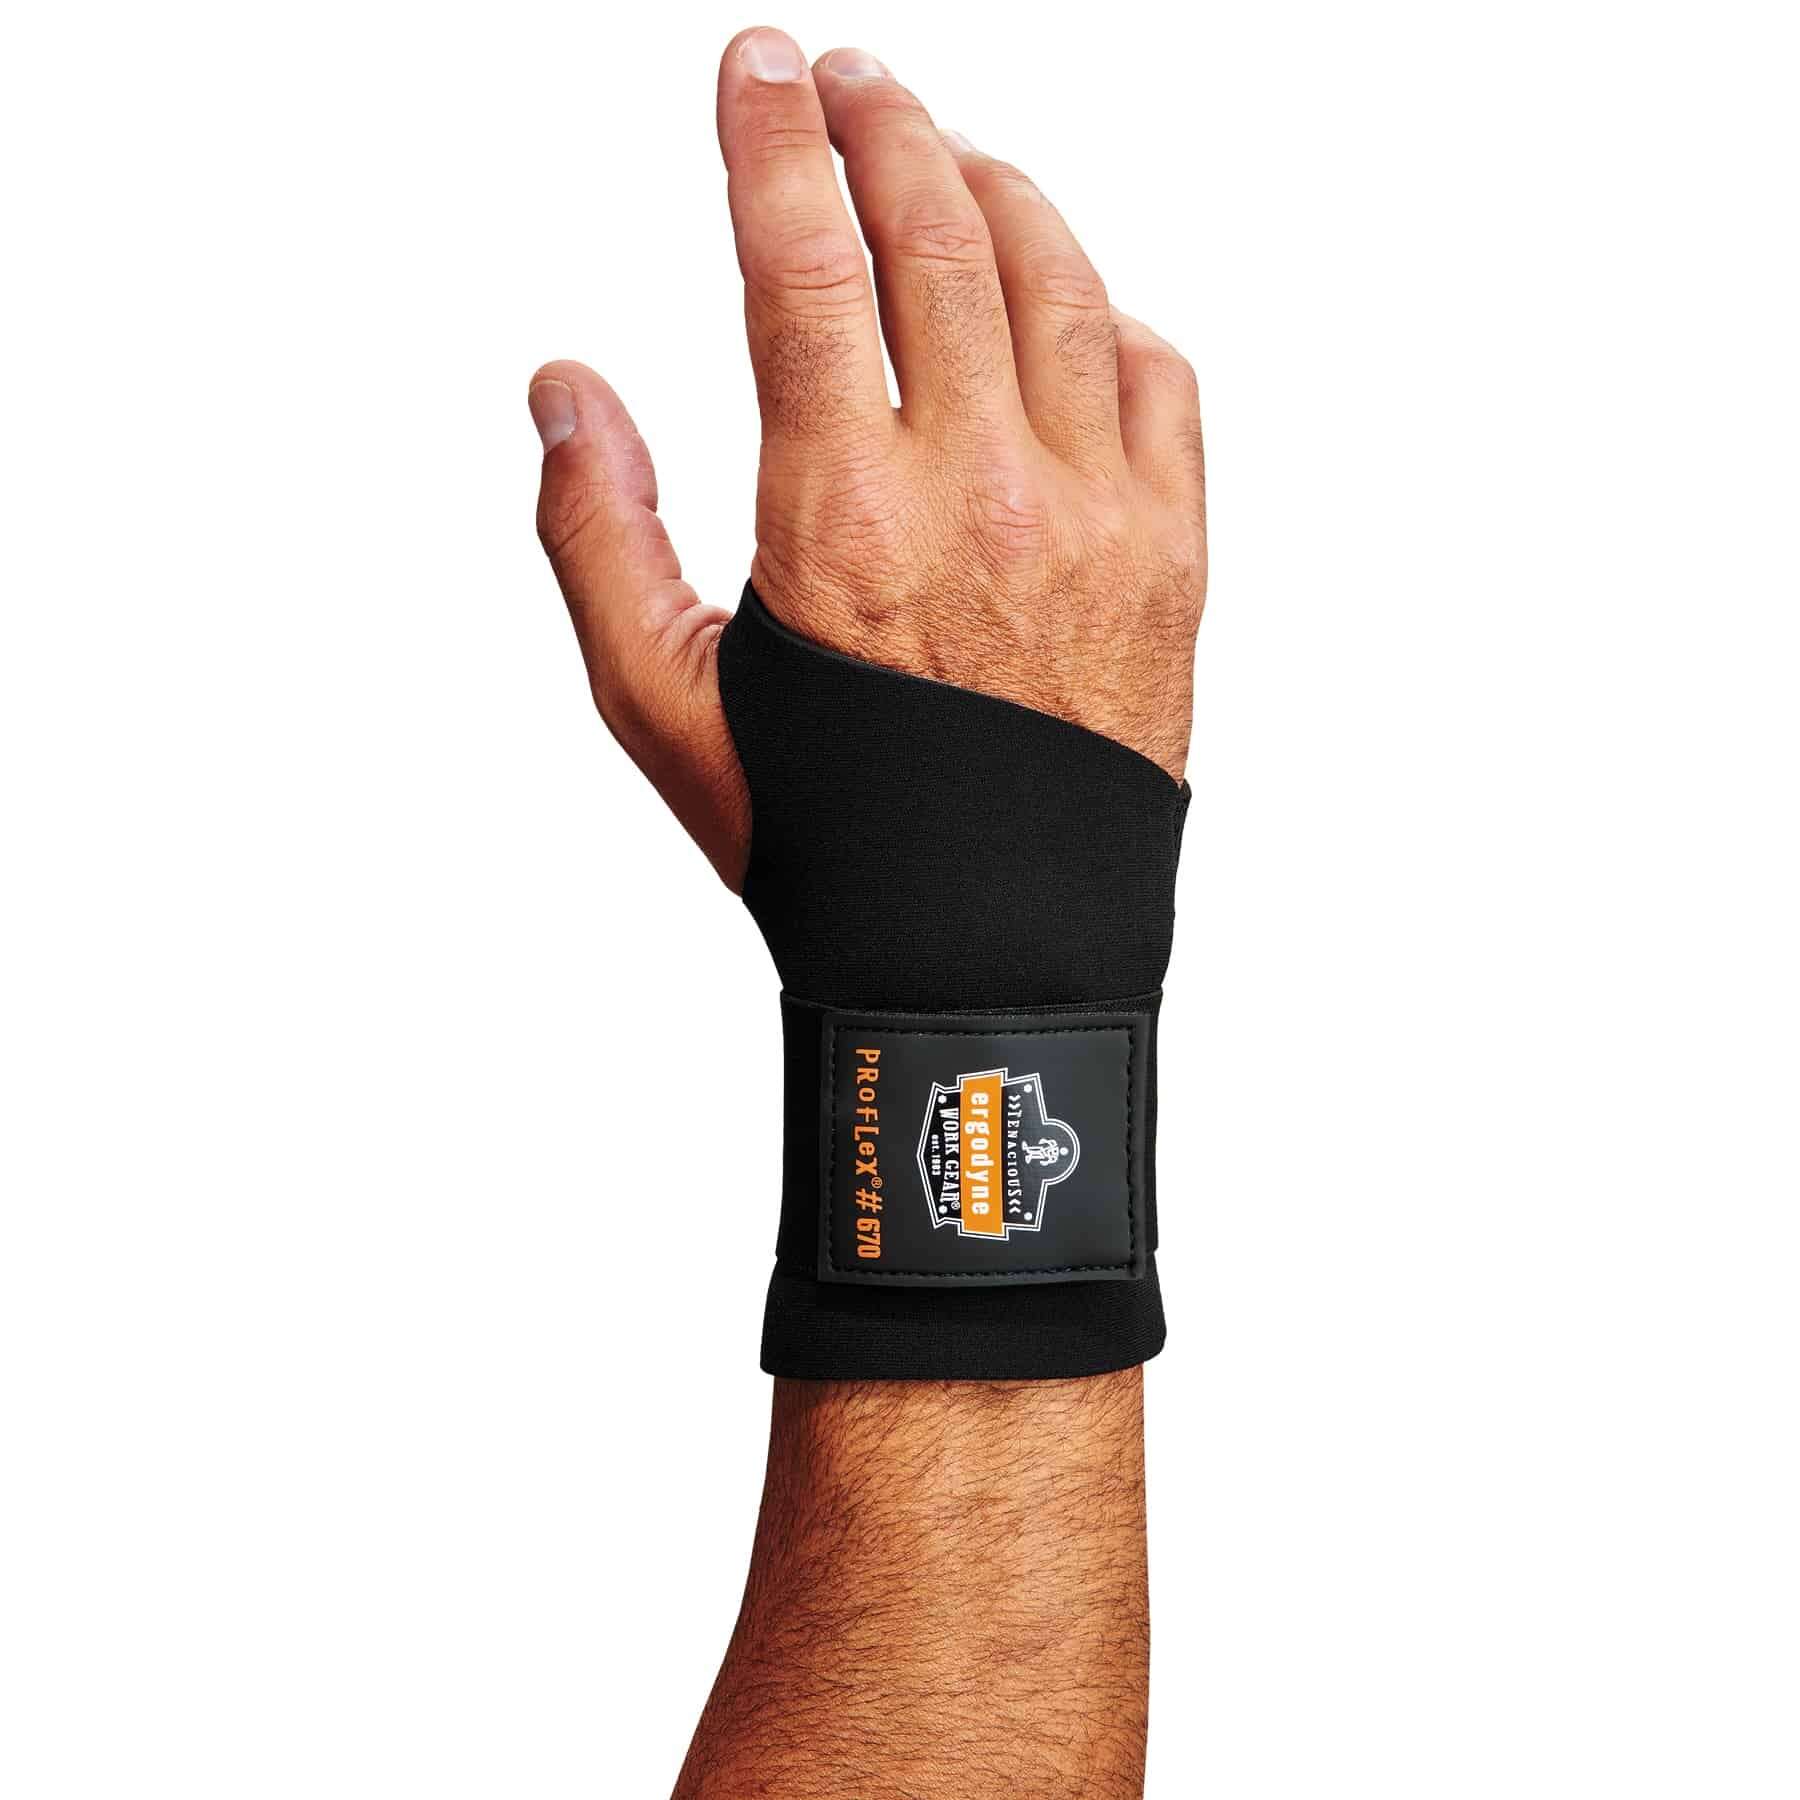 Ambidextrous Single Strap Wrist Support - Wrist Supports